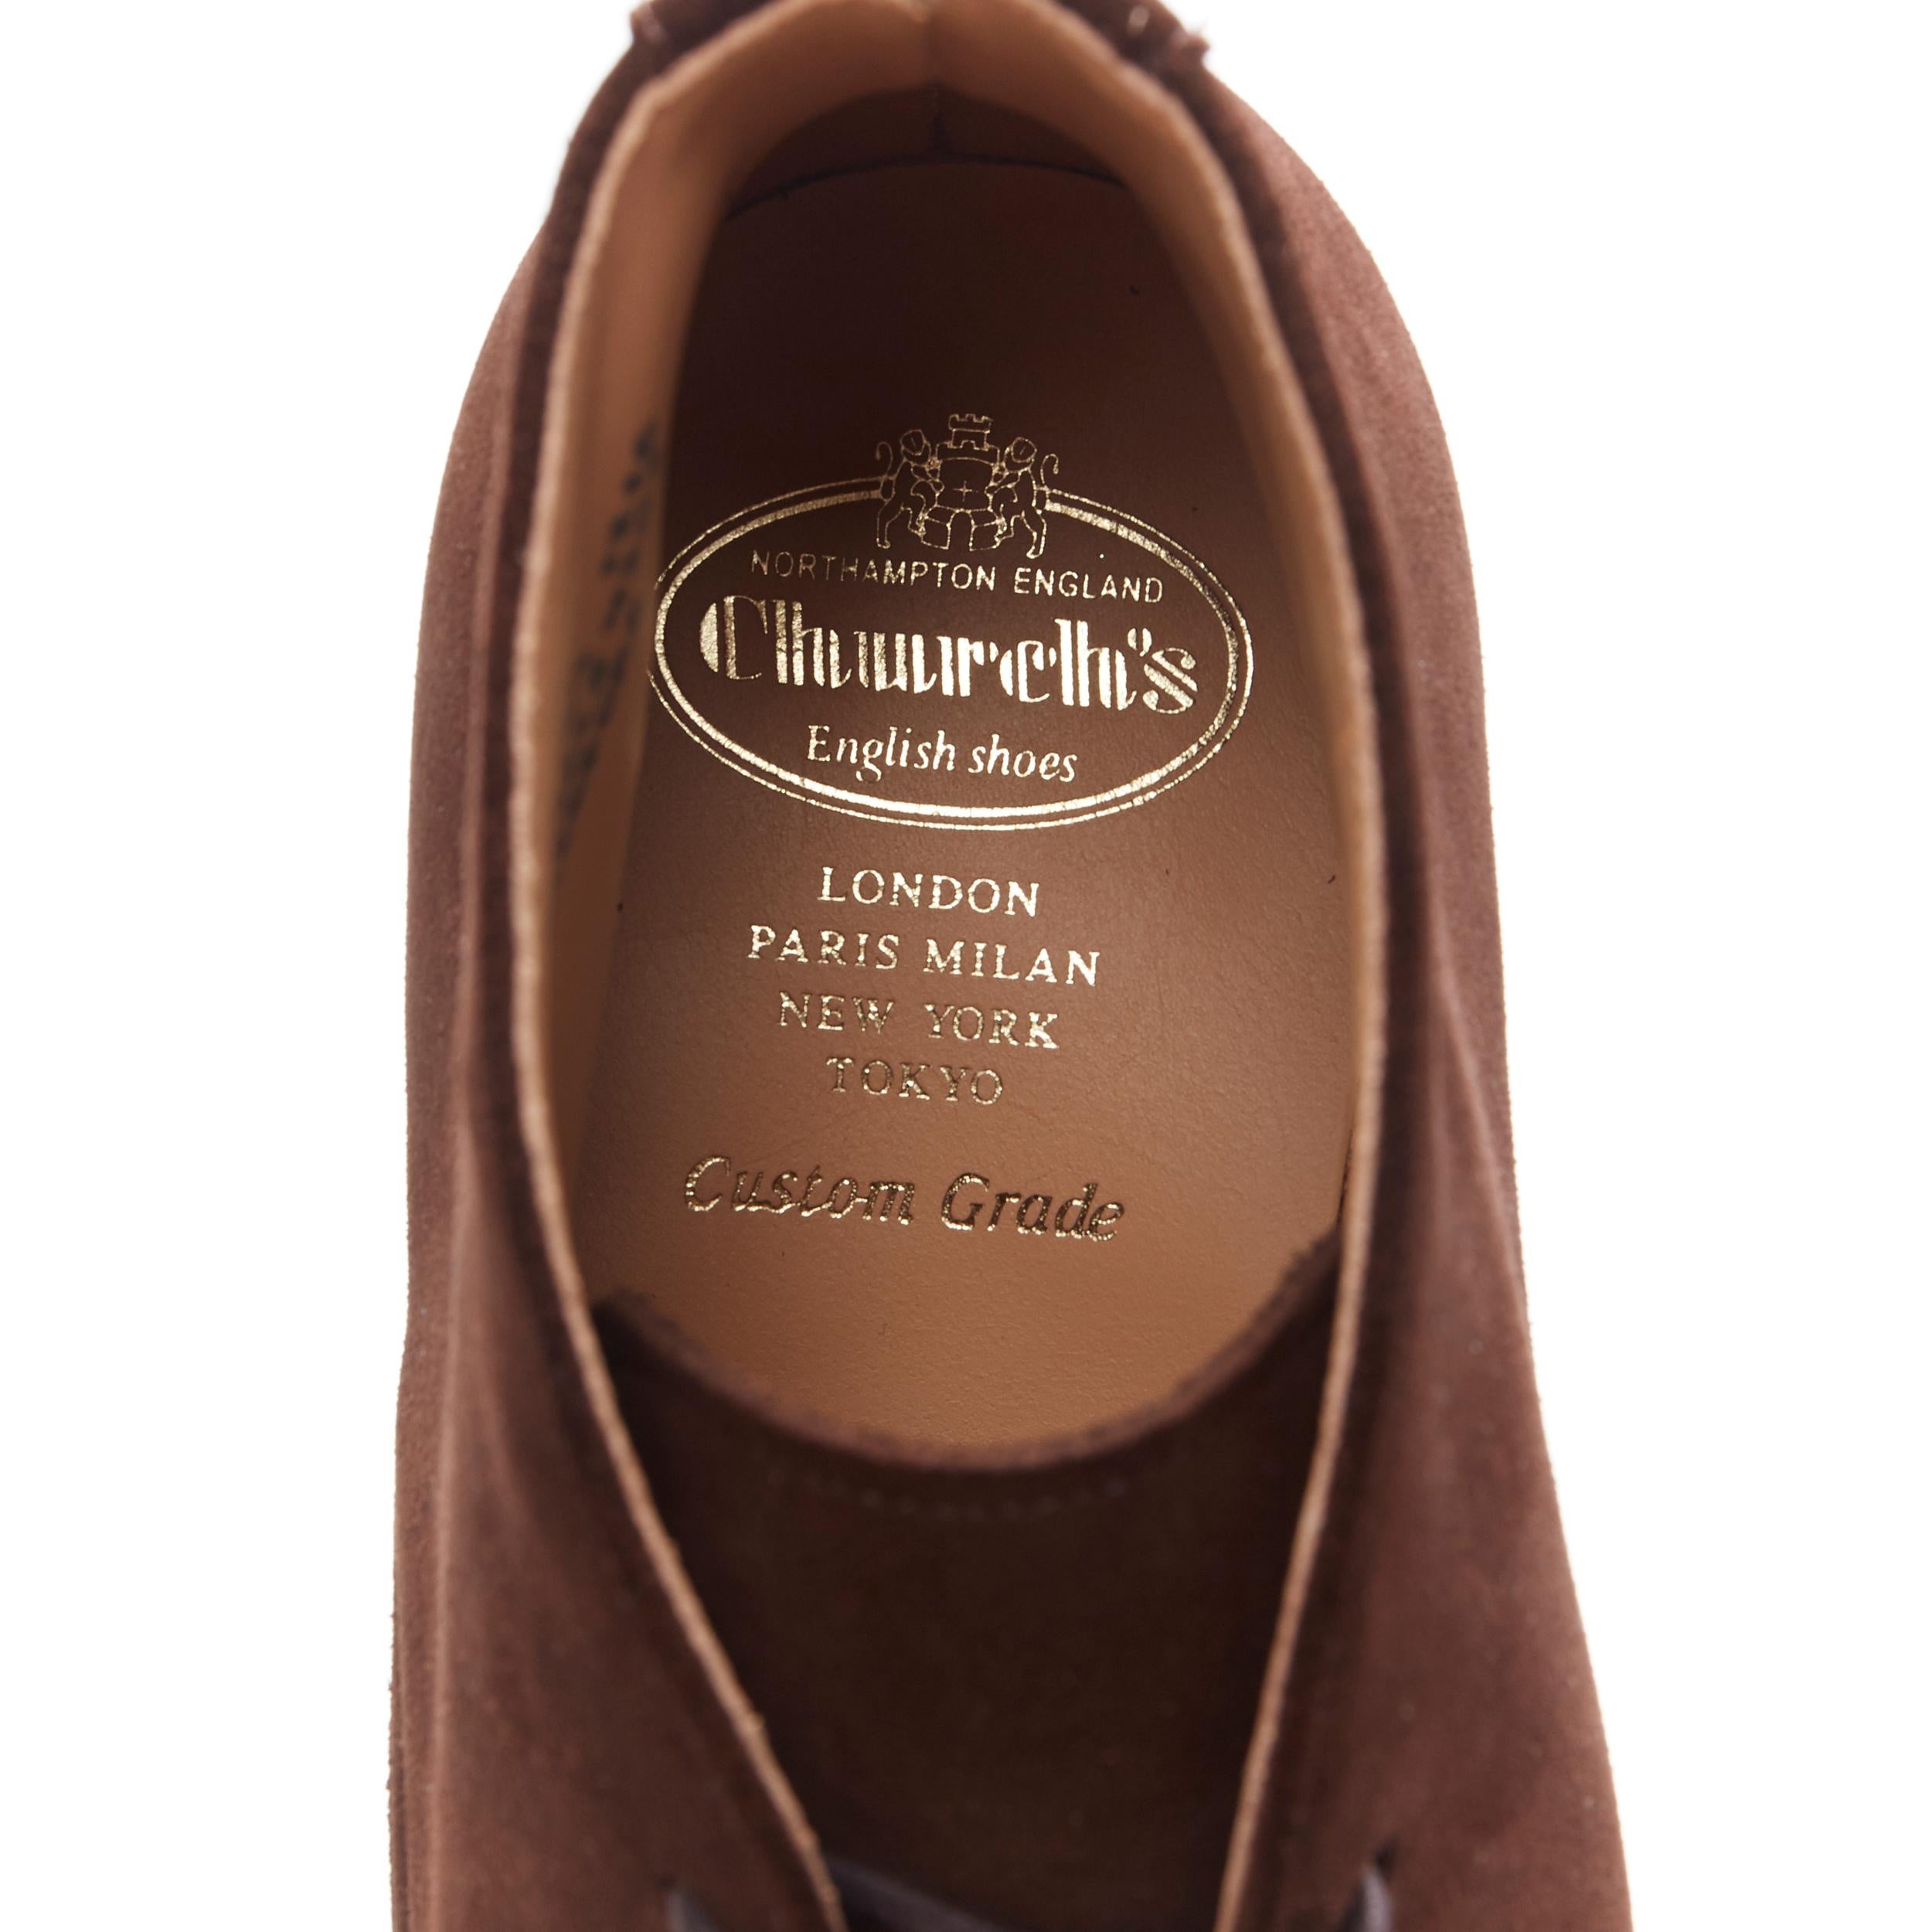 new CHURCH'S Rickford Superbuck brown suede chukka desert boots UK10.5 EU44.5 6